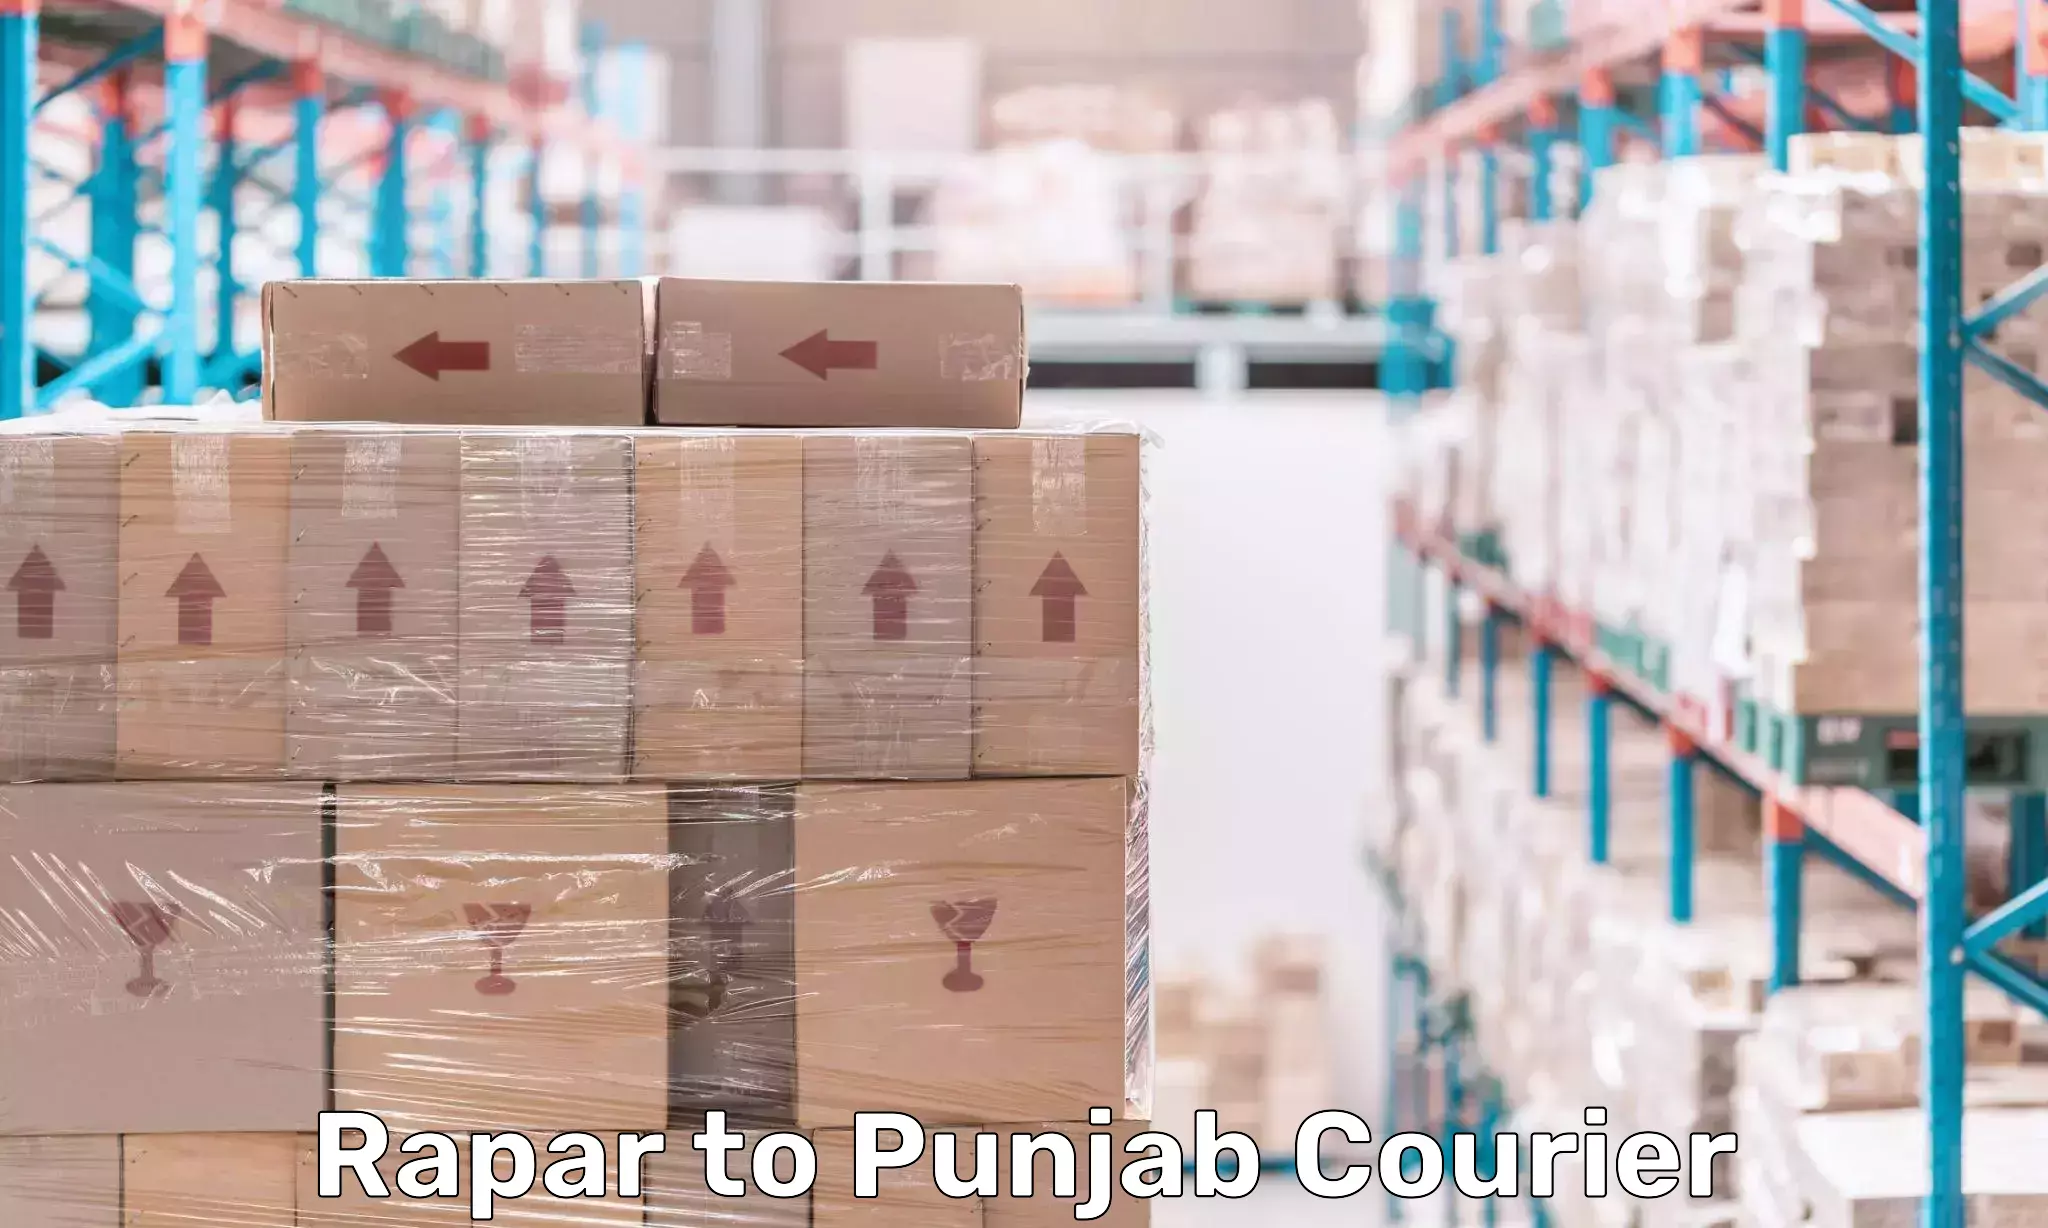 Customized shipping options Rapar to Central University of Punjab Bathinda